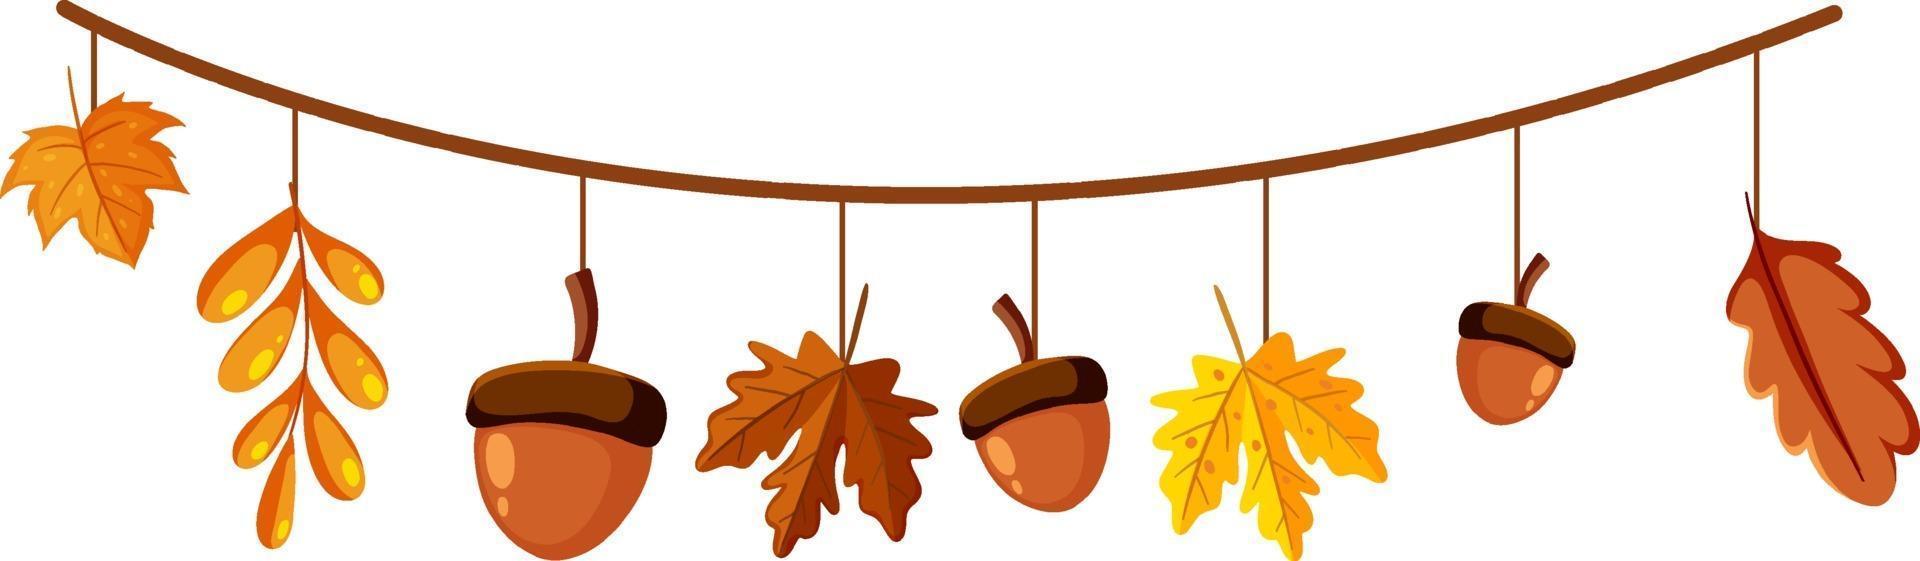 bellota y hojas de otoño para la decoración vector